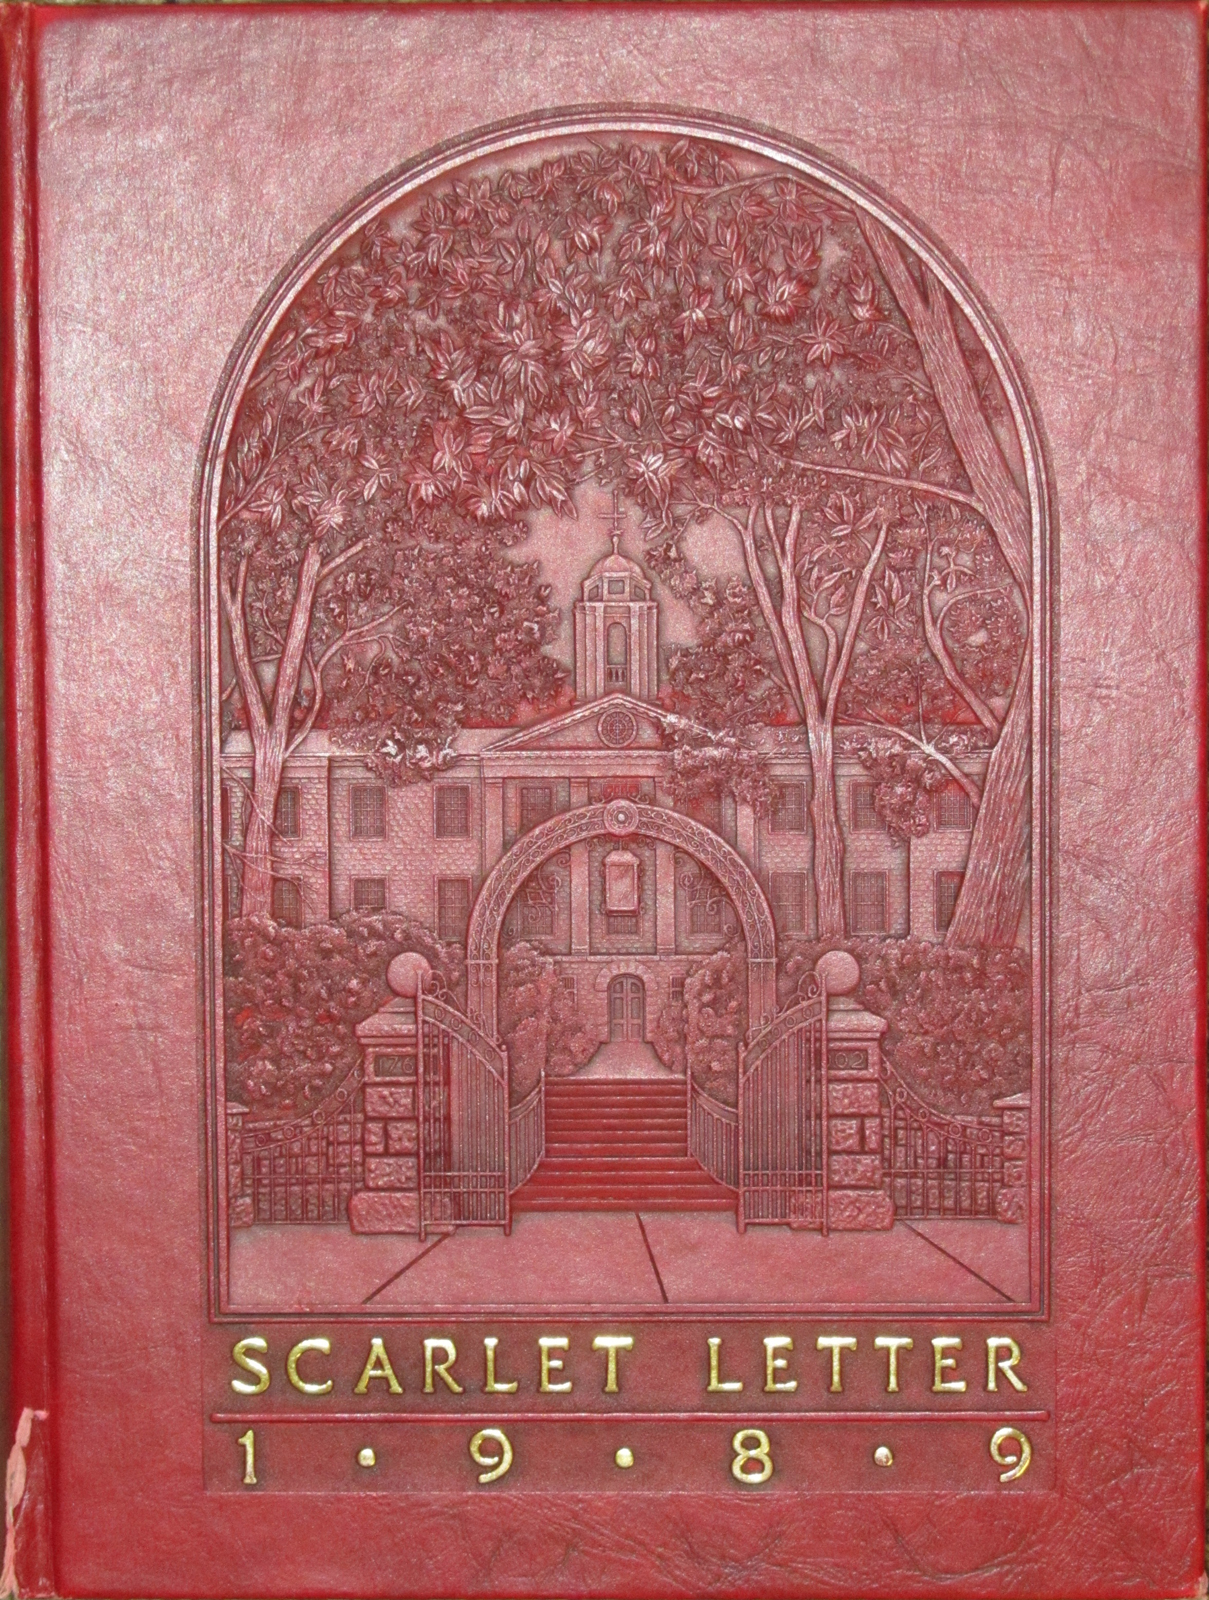 1989 - Scarlet Letter